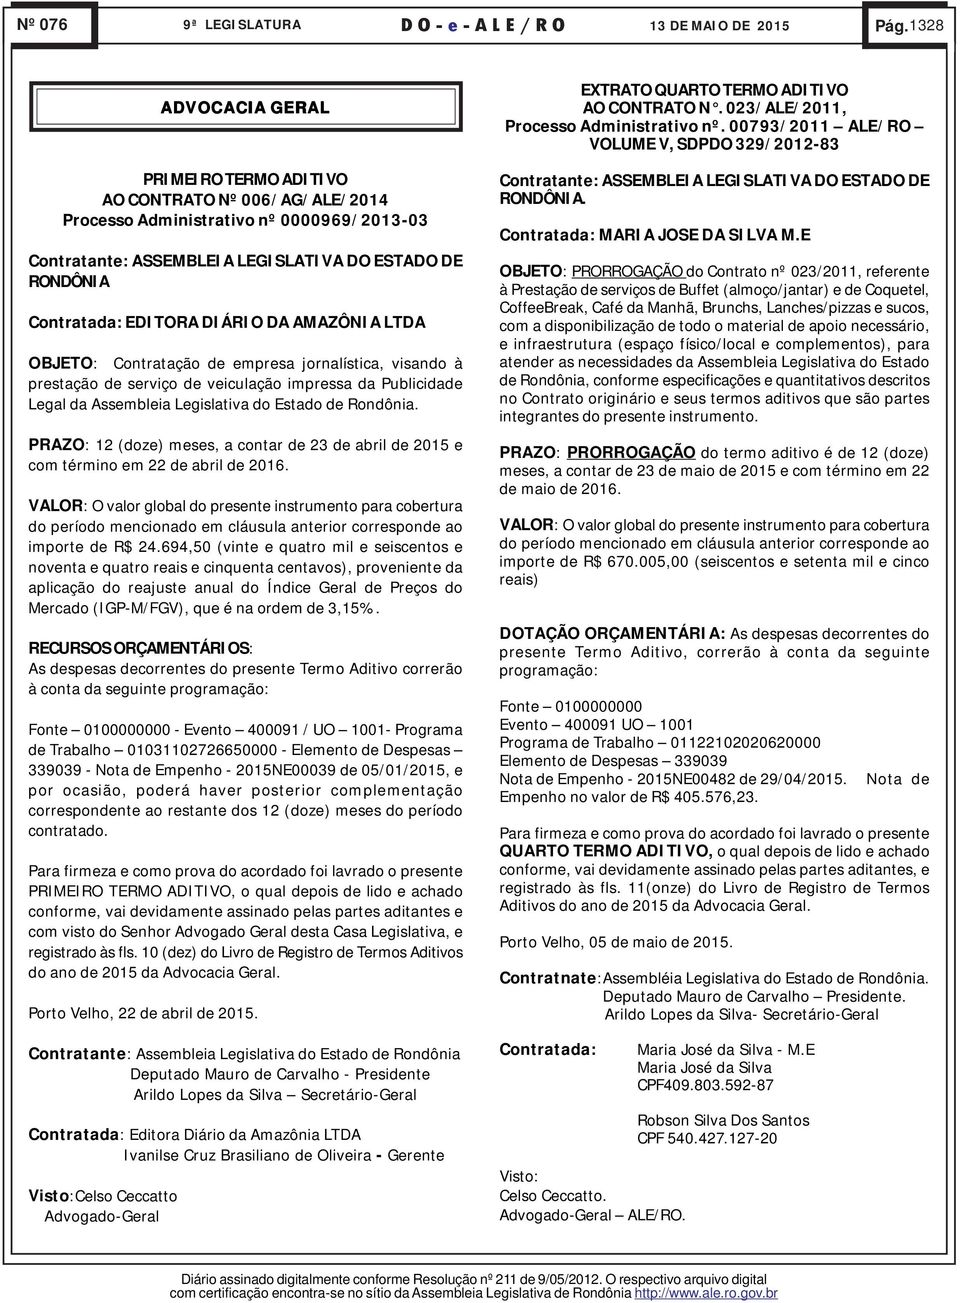 DIÁRIO DA AMAZÔNIA LTDA OBJETO: Contratação de empresa jornalística, visando à prestação de serviço de veiculação impressa da Publicidade Legal da Assembleia Legislativa do Estado de Rondônia.